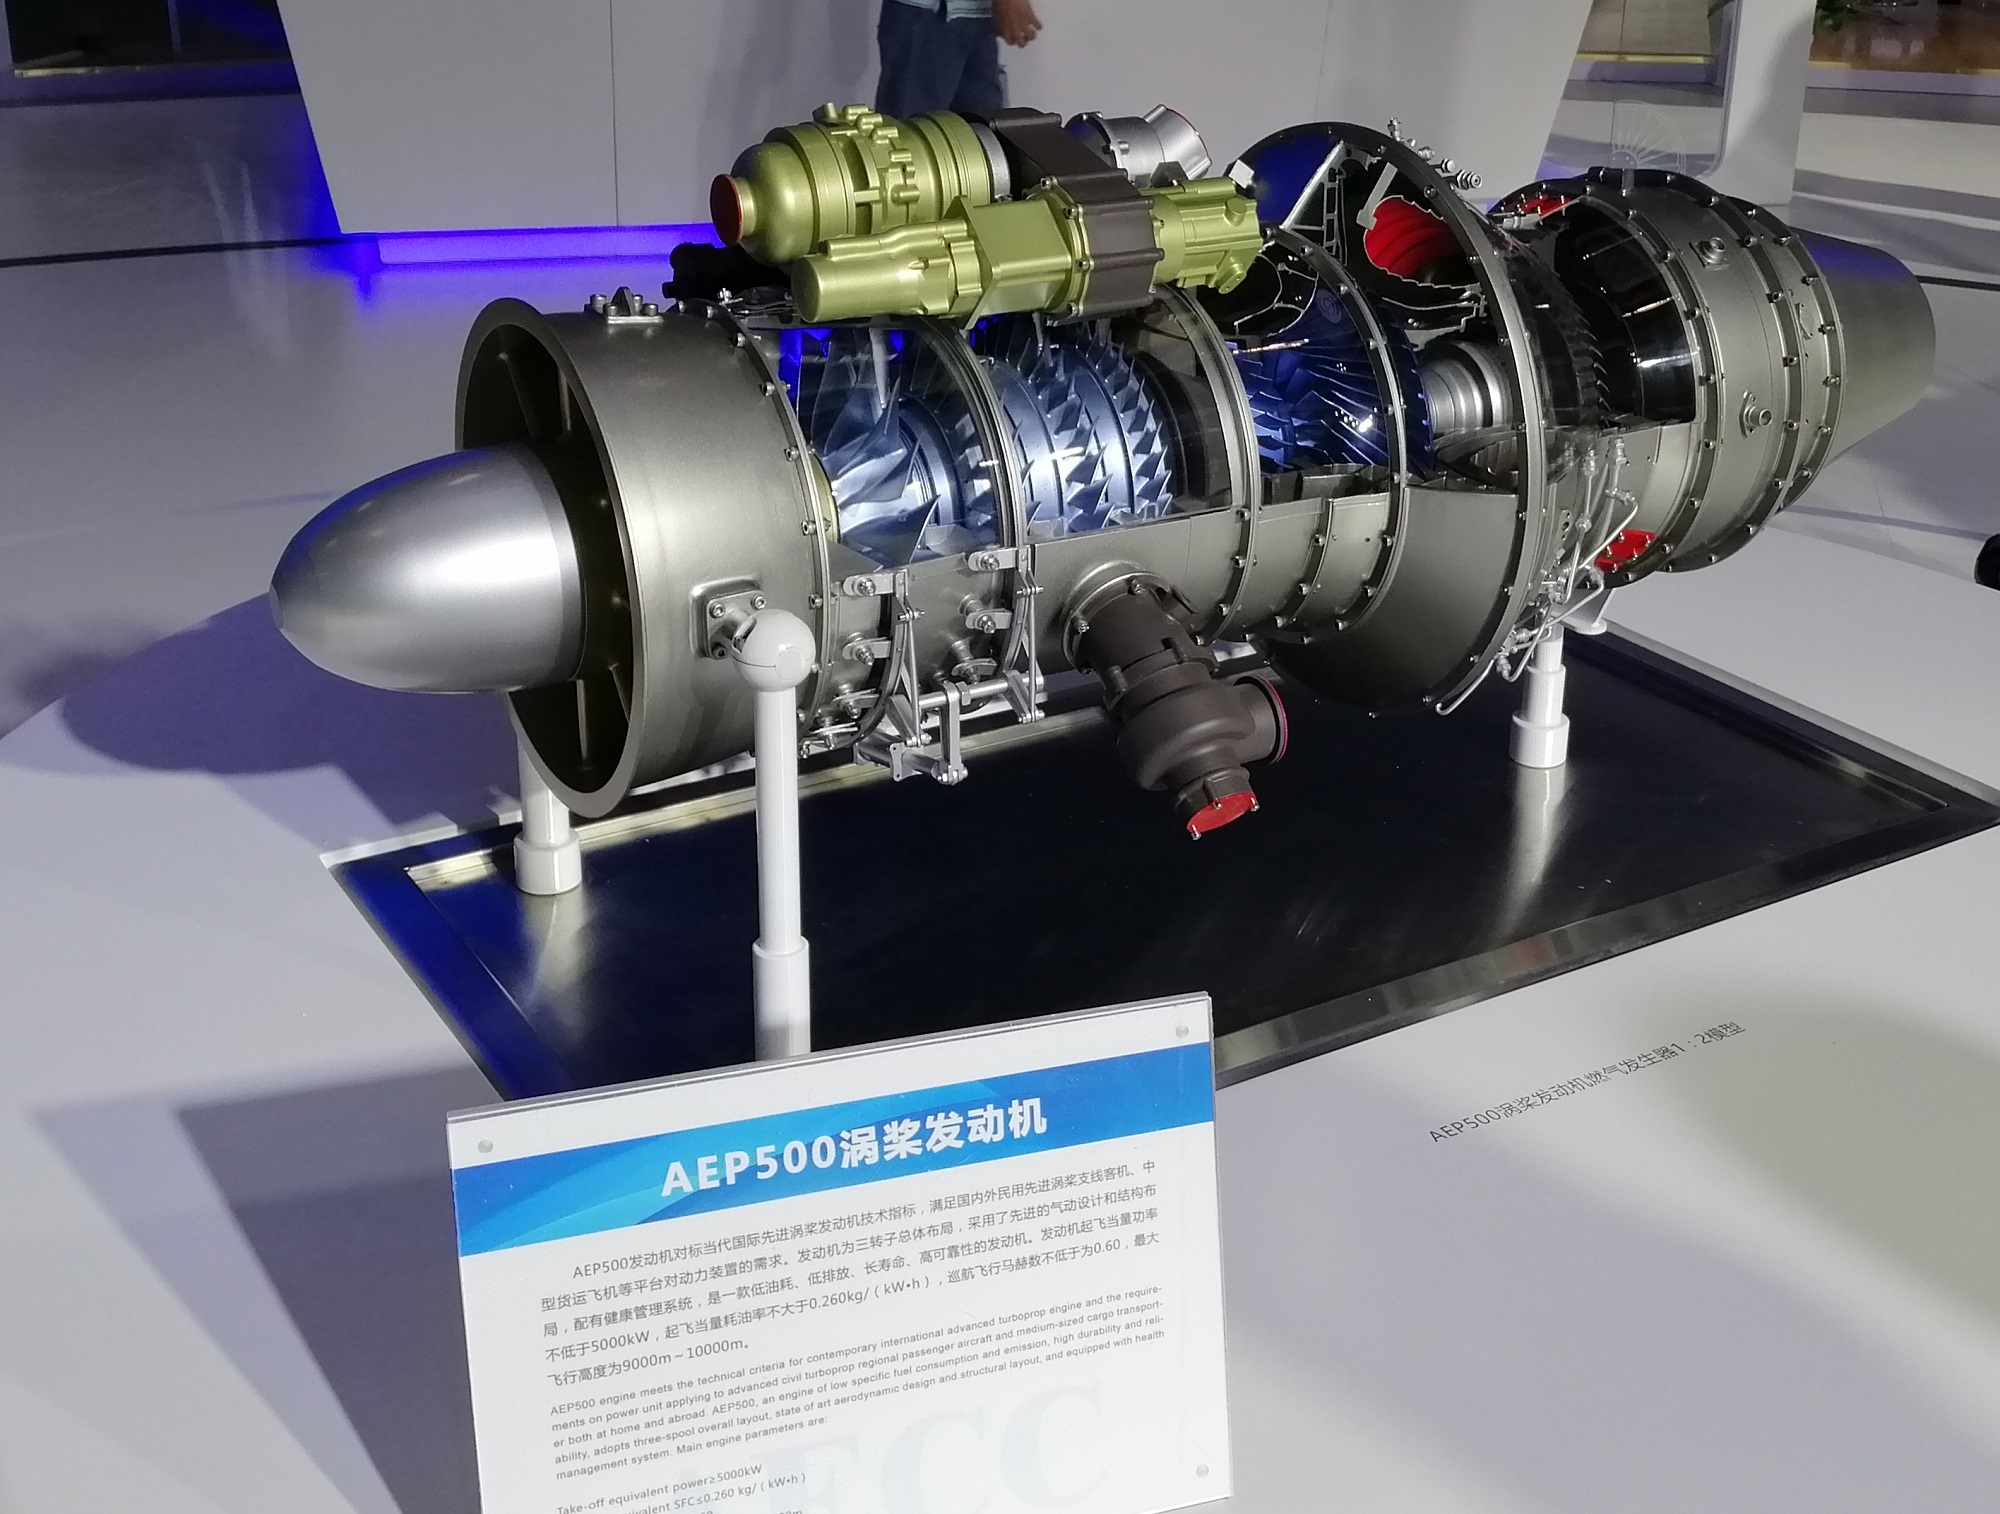 AEP500航空发动机模型制作